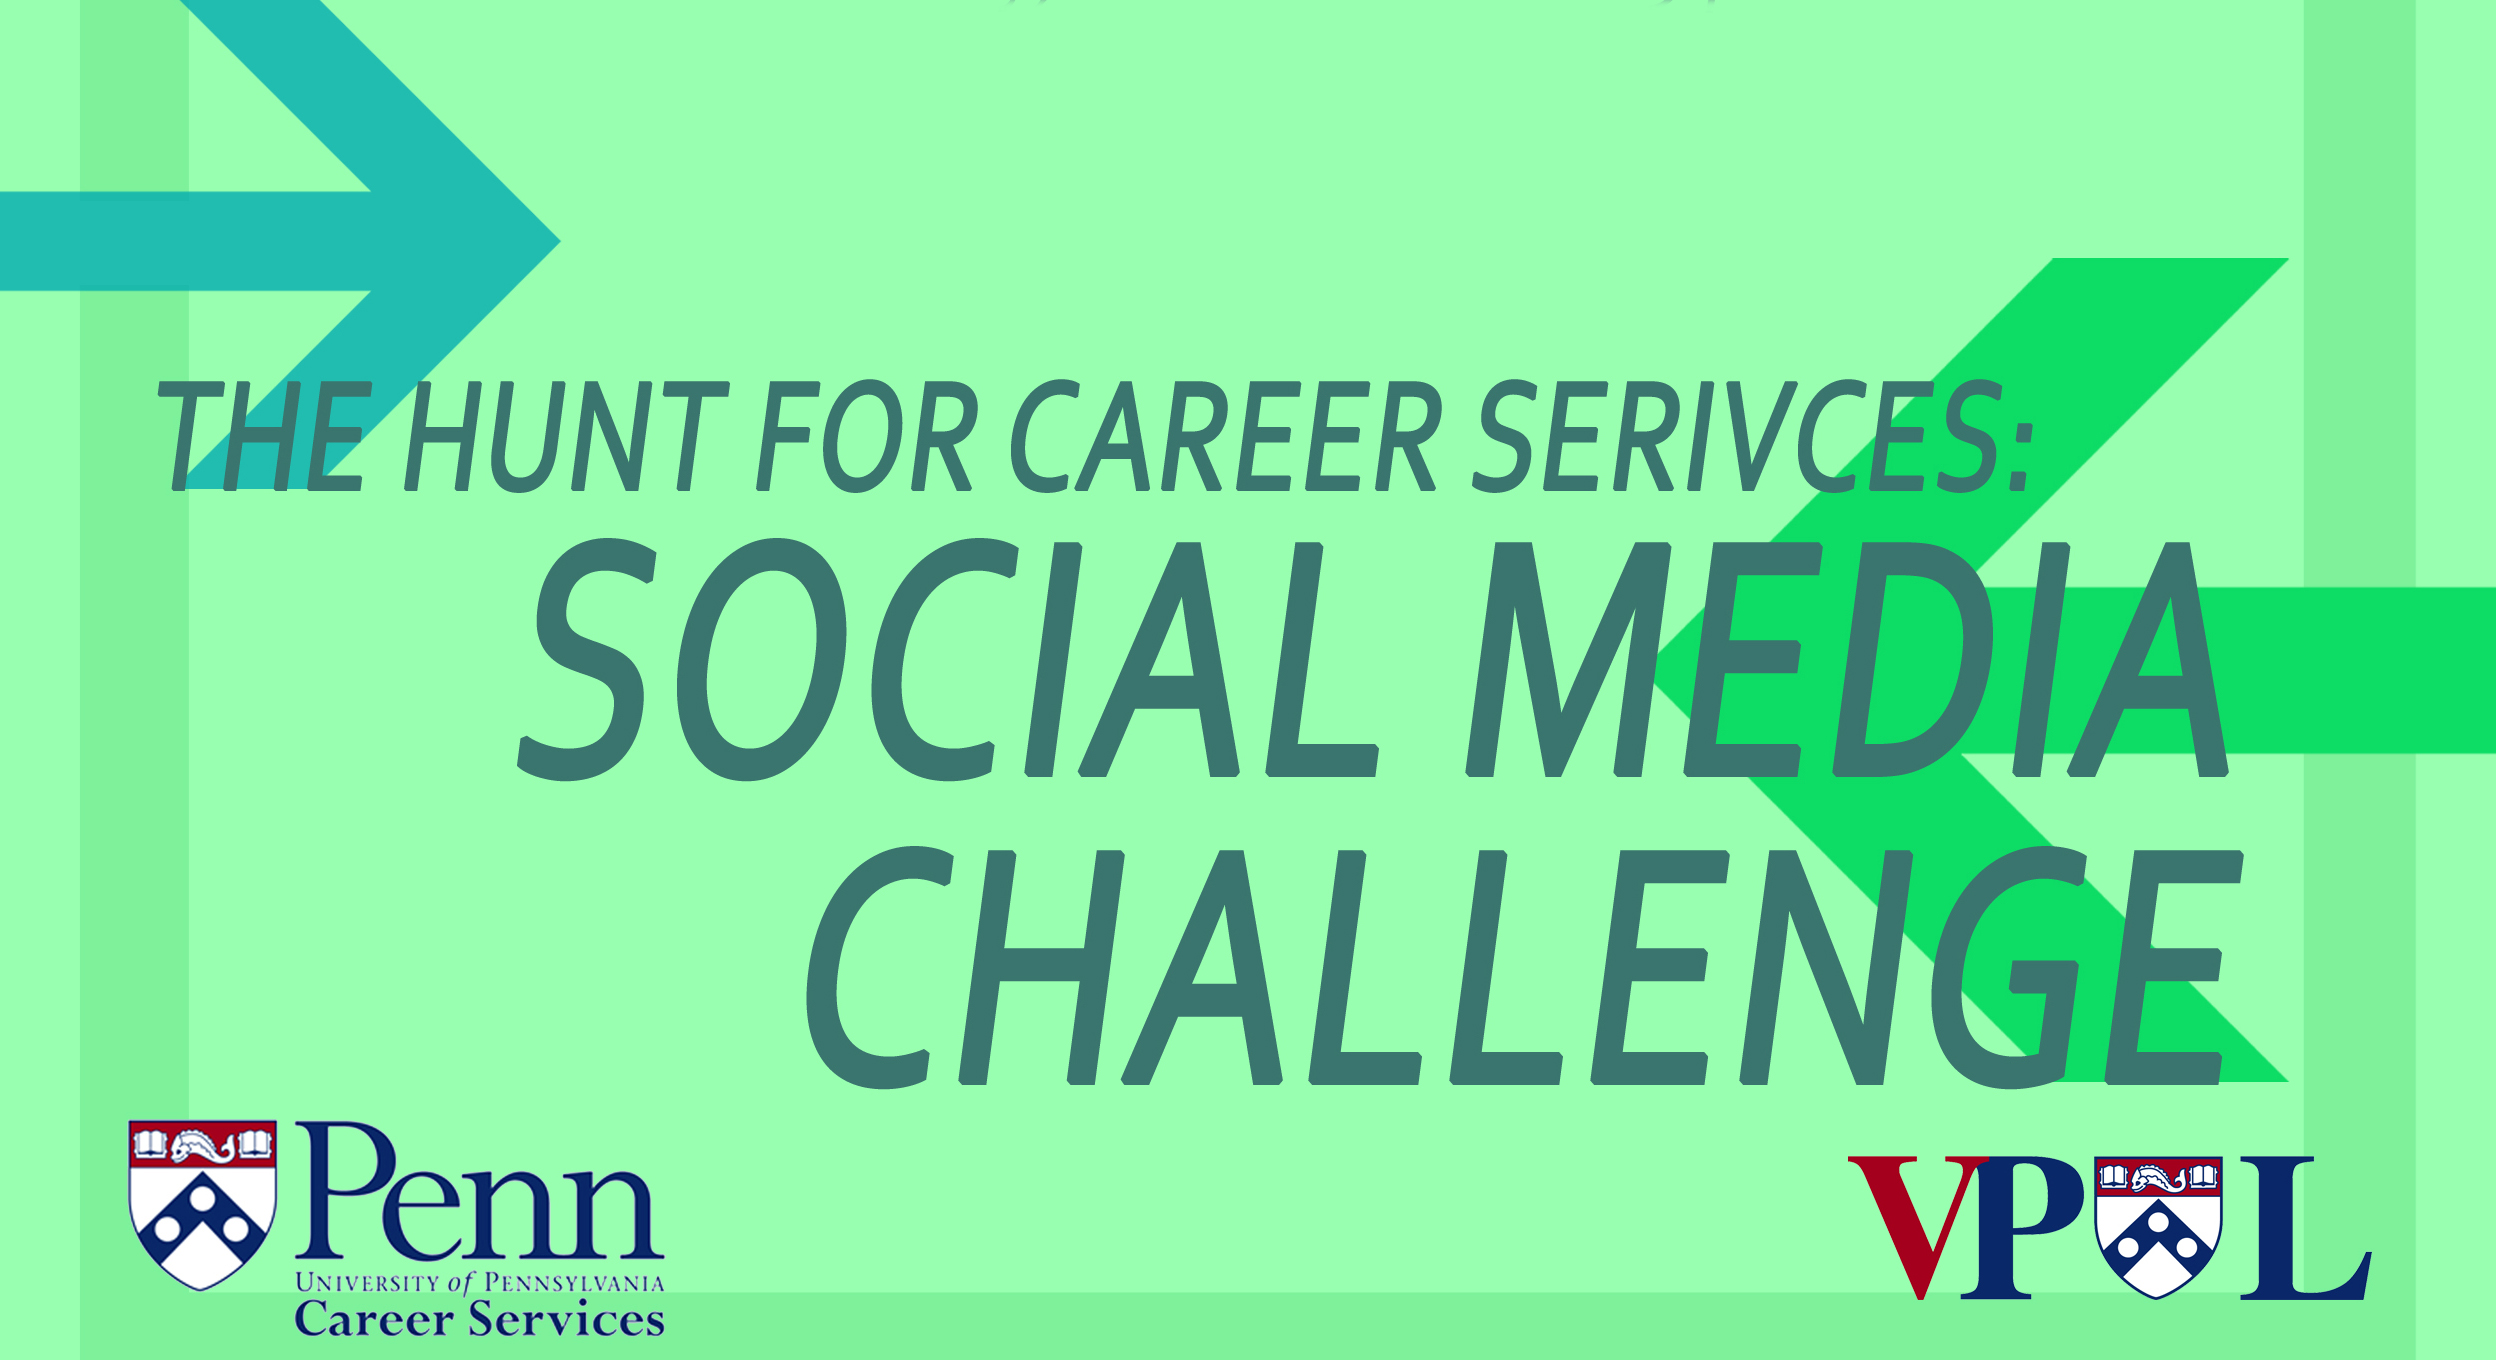 Social Media Challenge Flyer Image